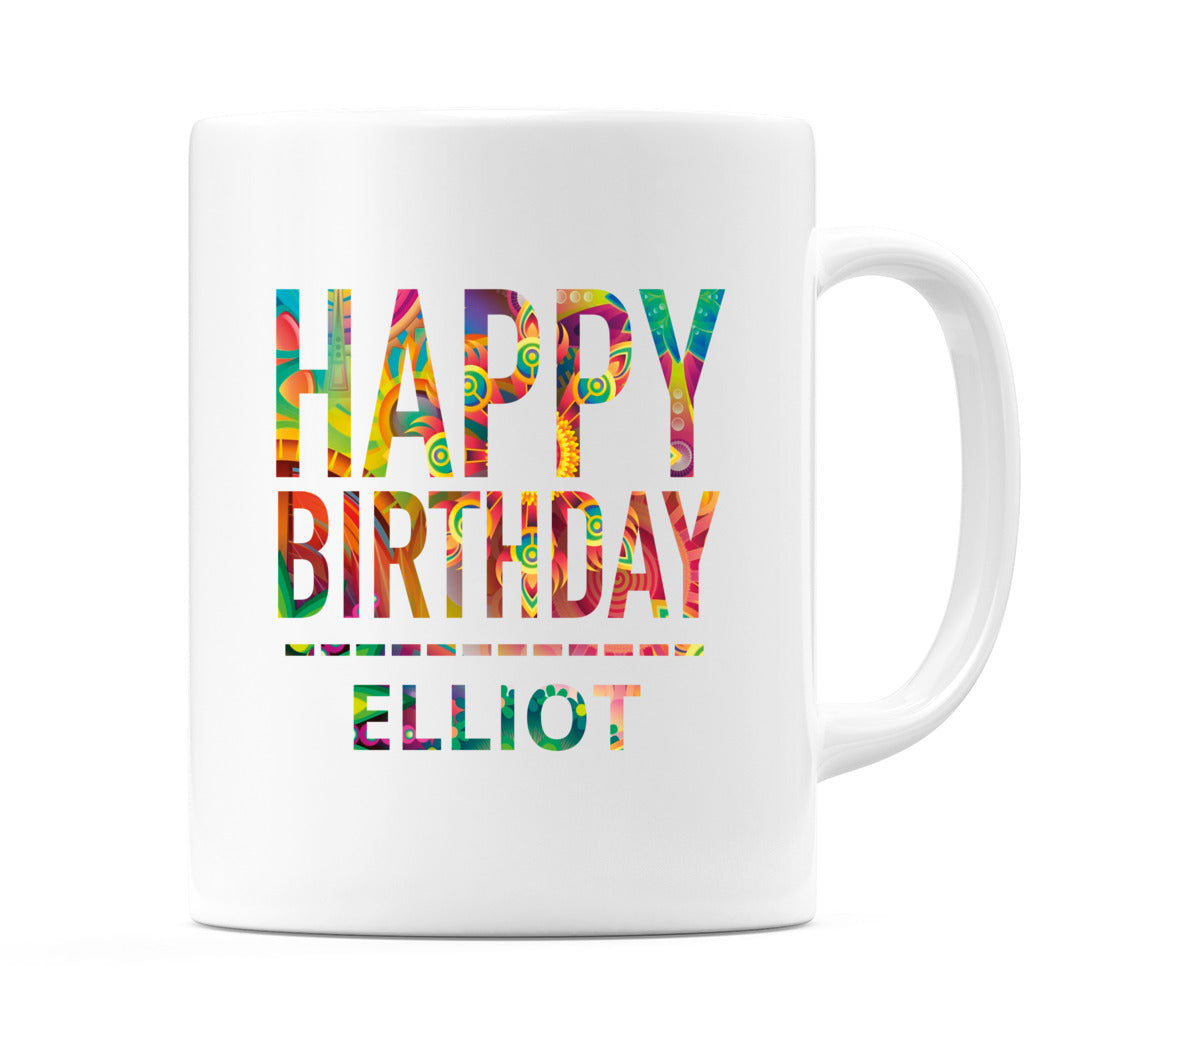 Happy Birthday Elliot (Tie Dye Effect) Mug Cup by WeDoMugs